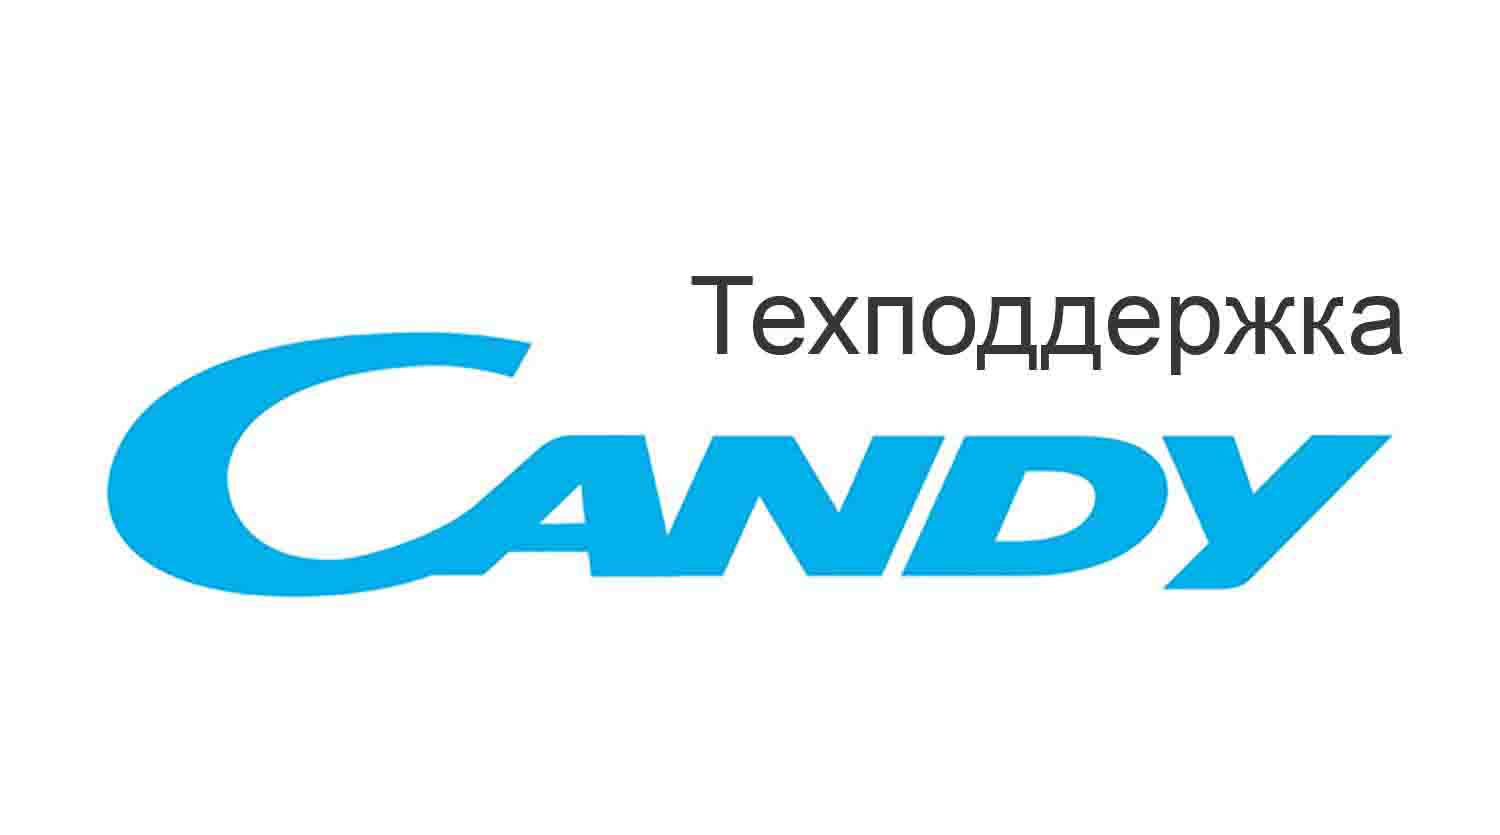 Техподдержка Candy, горячая линия в России, служба поддержки